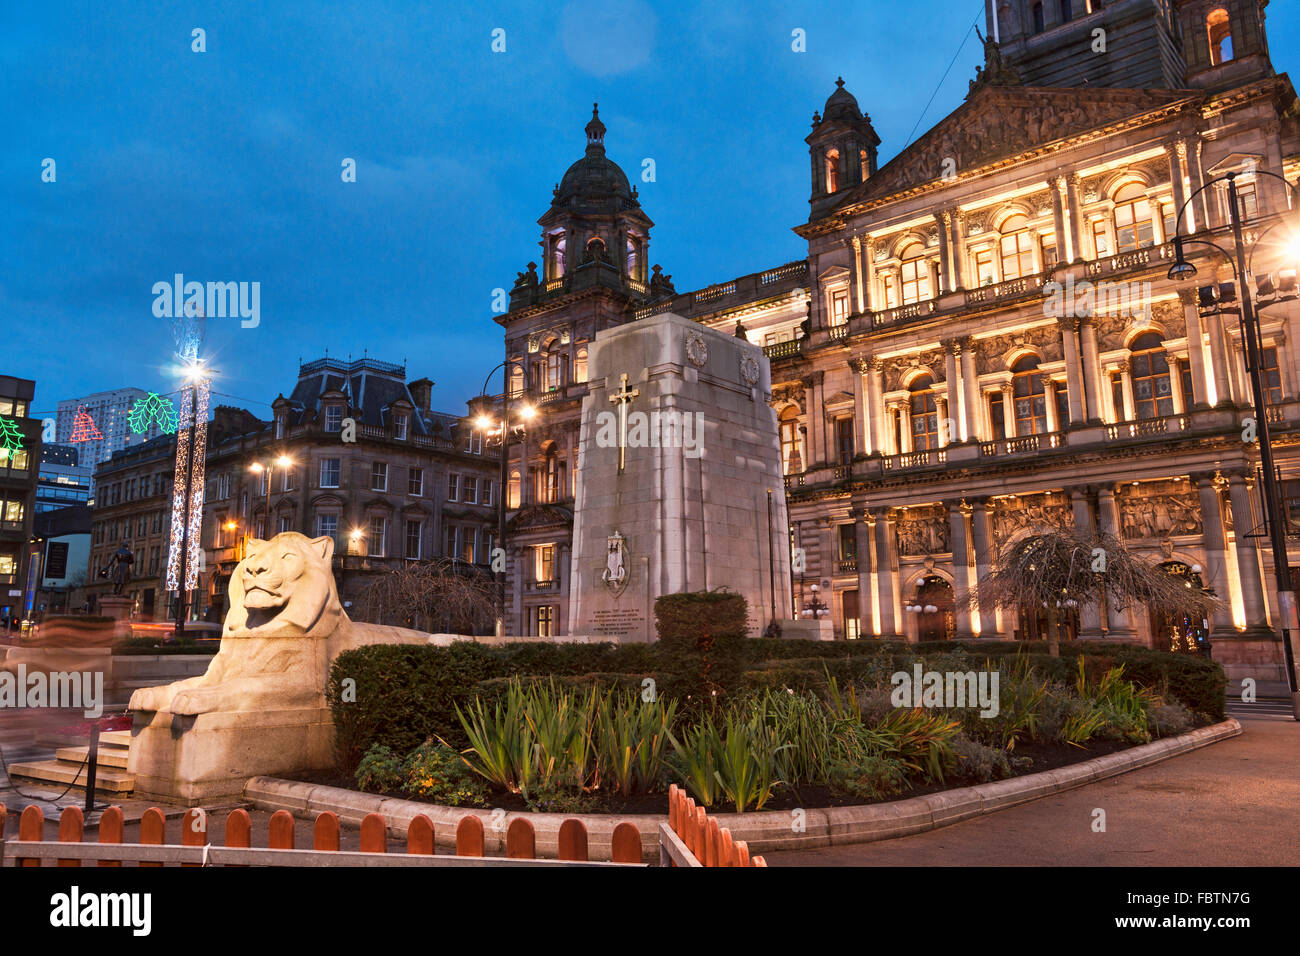 George Square, Glasgow City Chambers, lumières de Noël et décorations, Ecosse, Royaume-Uni Banque D'Images